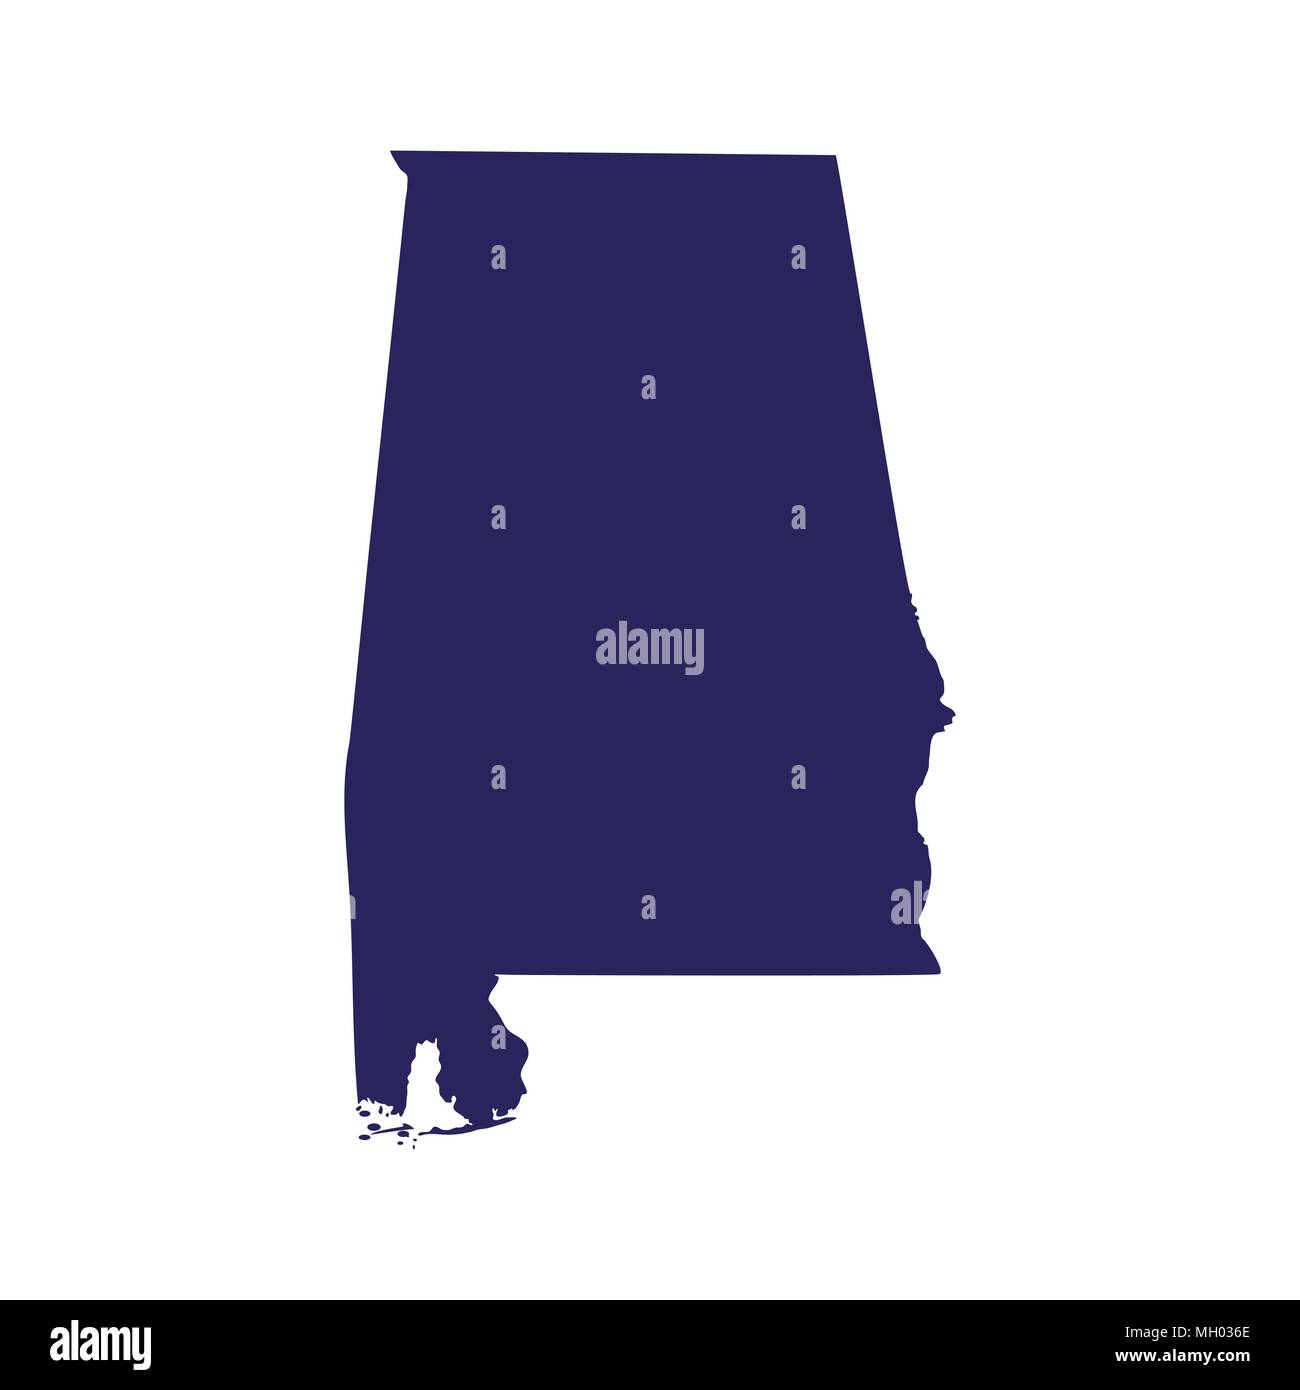 Plan de l'état américain de l'Alabama Illustration de Vecteur